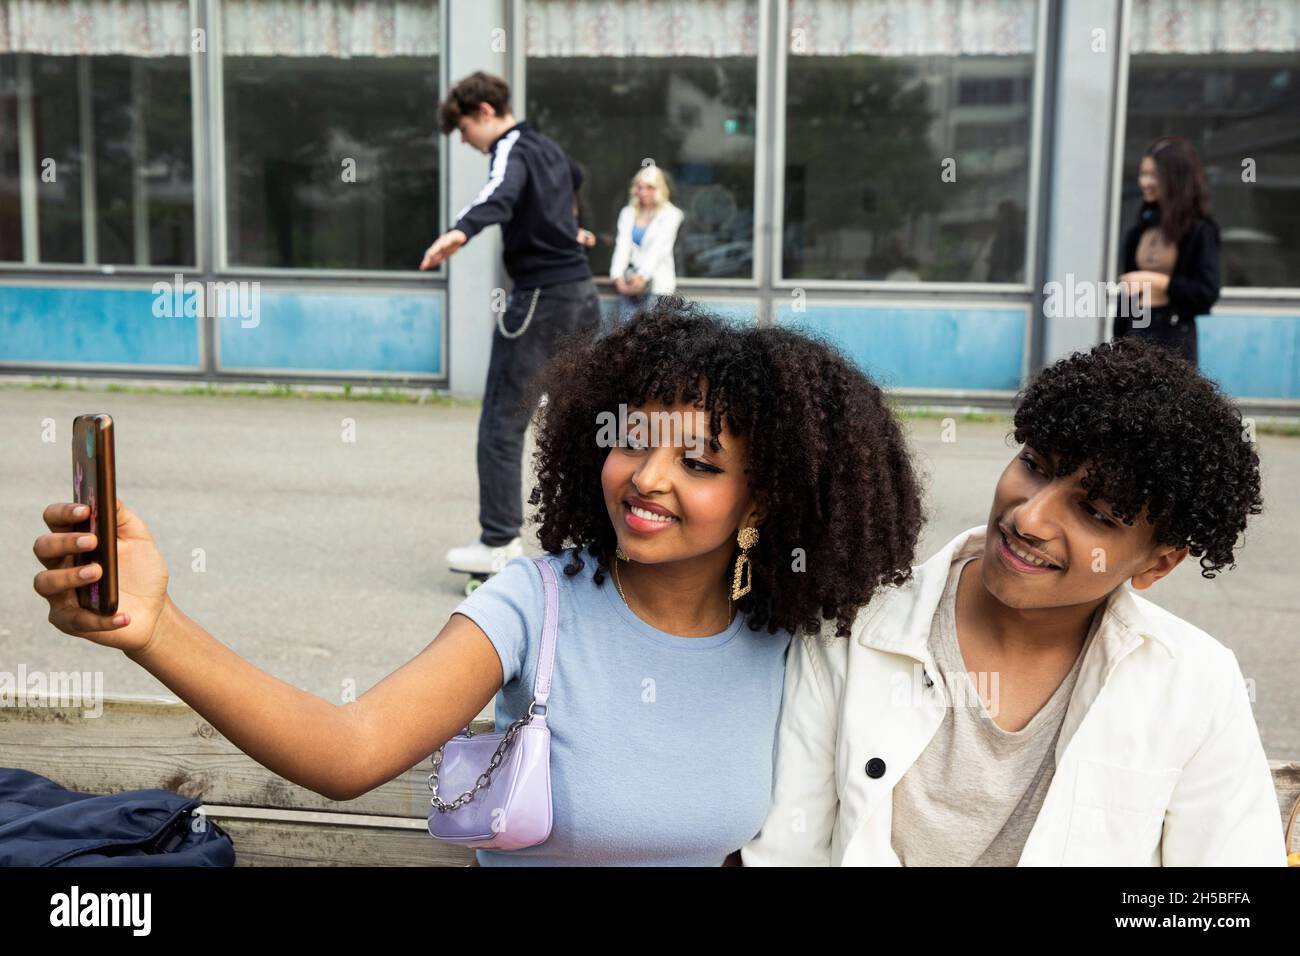 Teenager-Mädchen, das Selfie mit einem männlichen Freund über das Smartphone nimmt, während sie auf der Bank sitzt Stockfoto